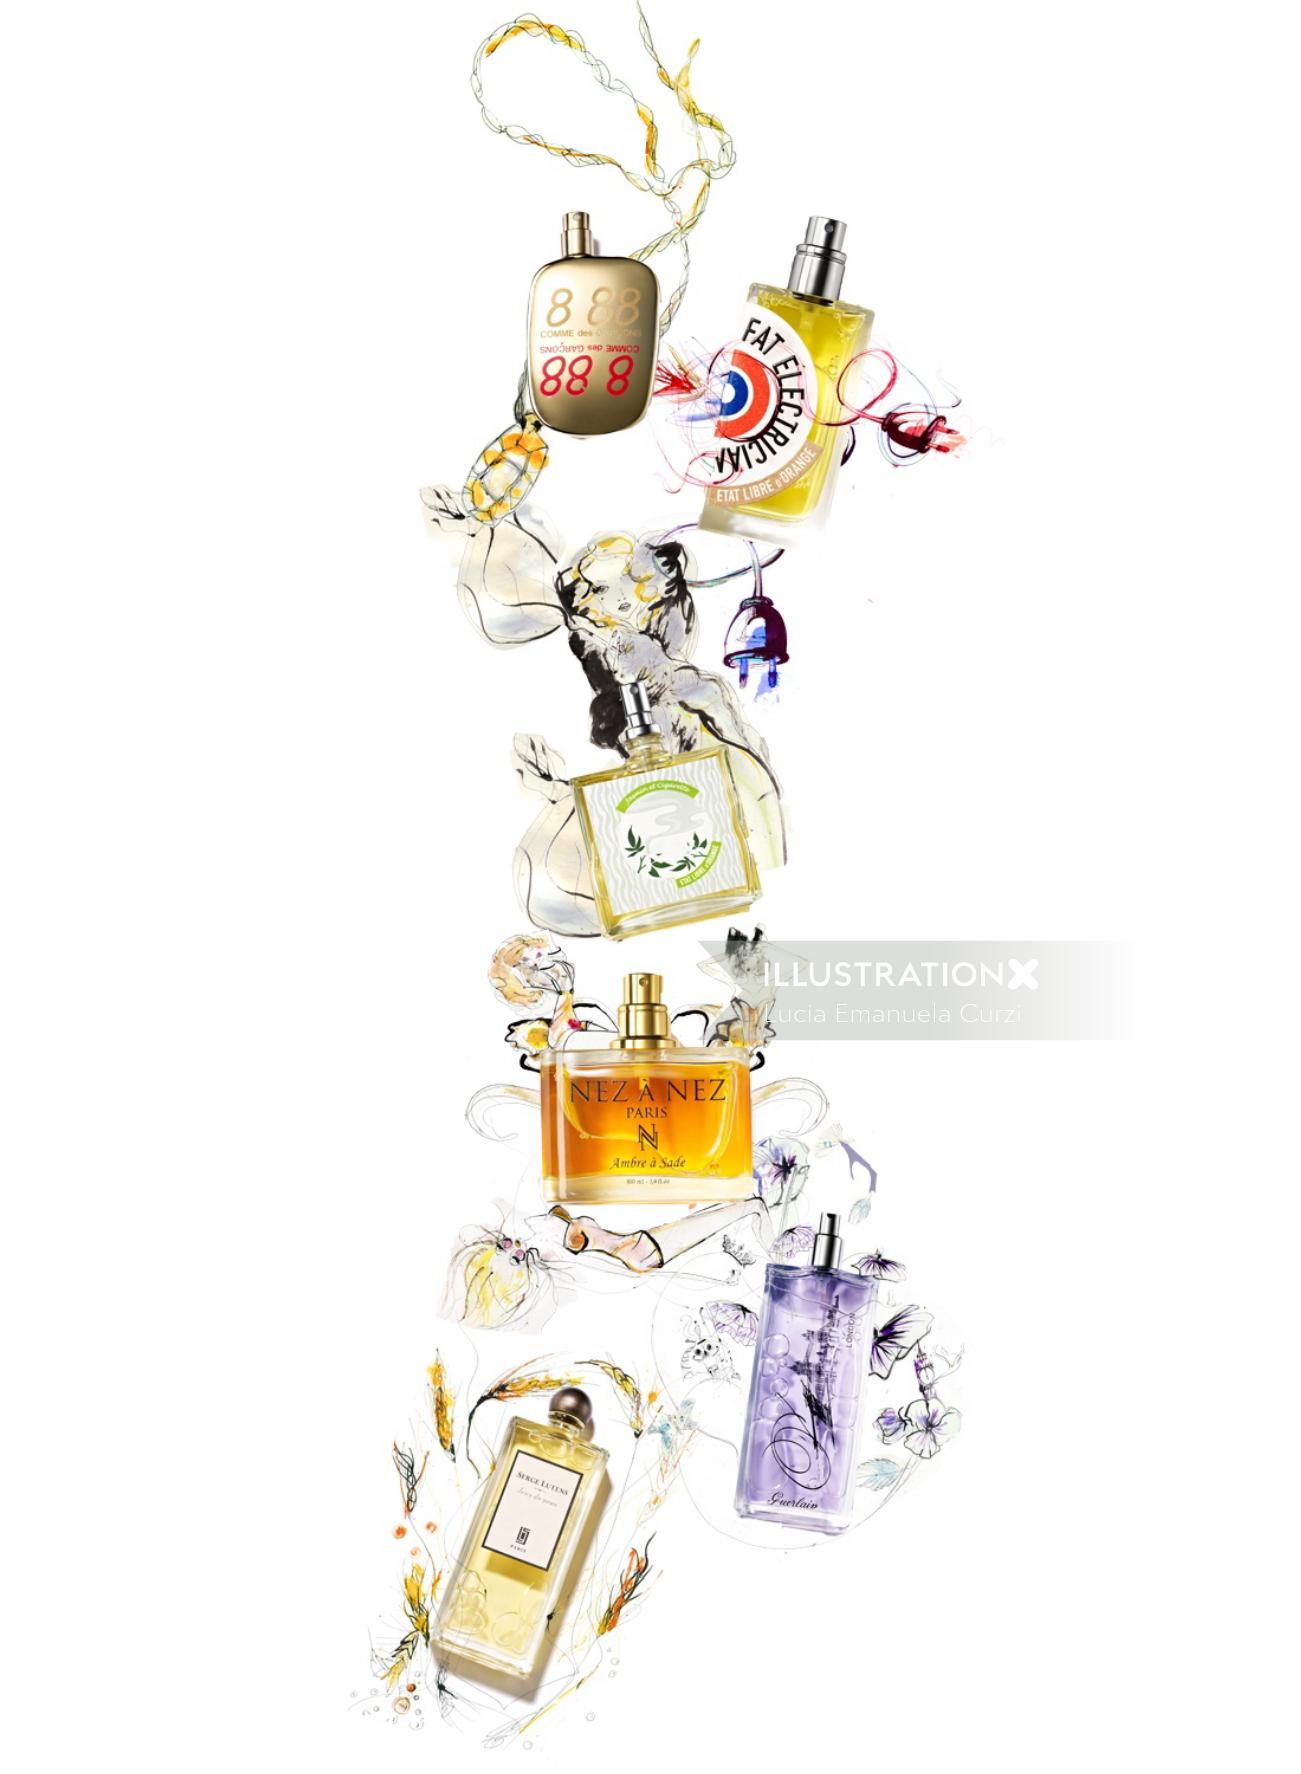 Lucia EmanuelaCurziによるフレグランスボトルのイラスト